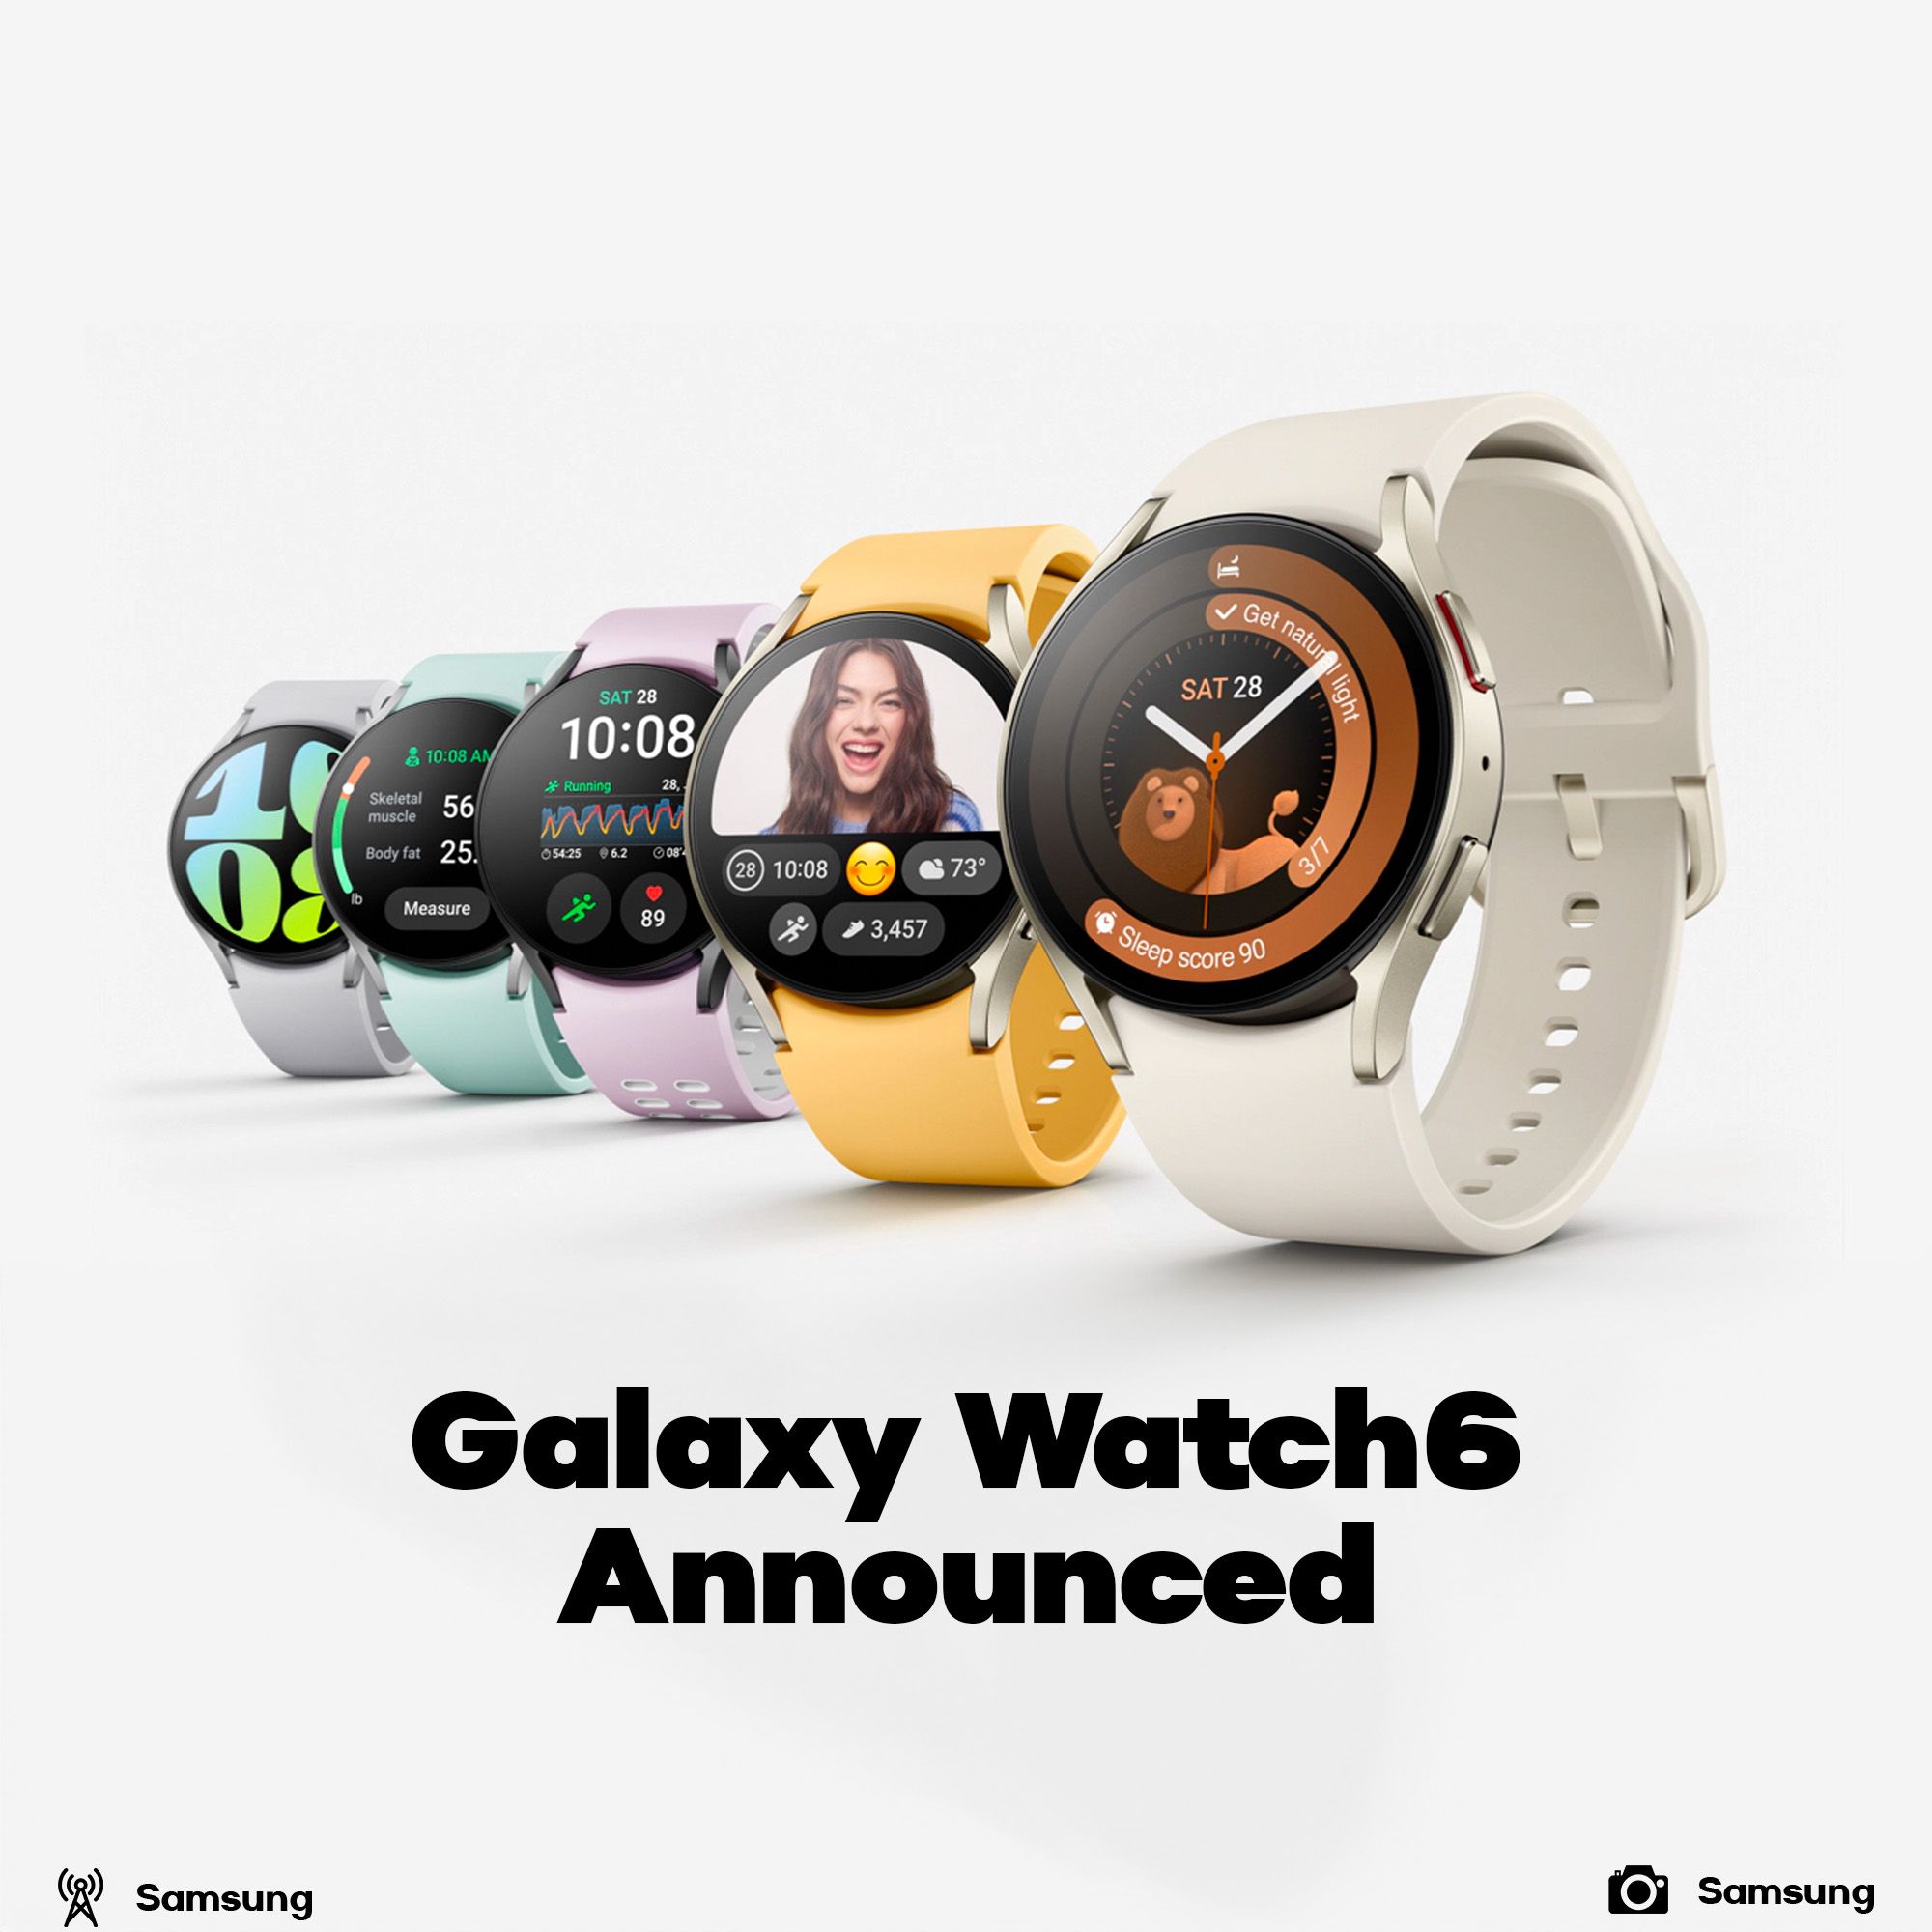 Samsung Galaxy Watch6 announced